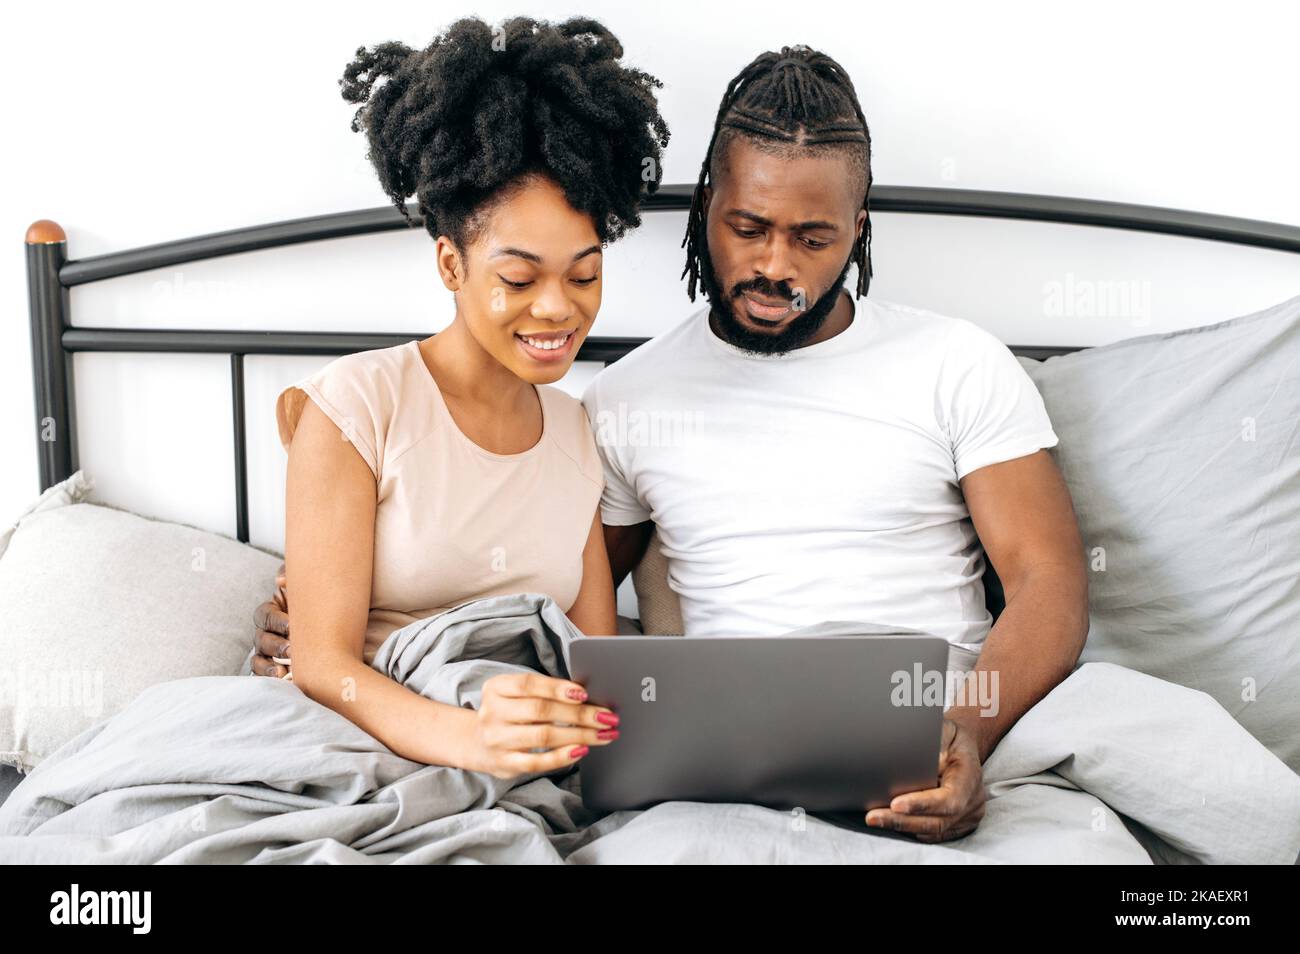 Sposi afro-americani, marito e moglie, positivi e soddisfatti, sono seduti in un letto in camera da letto, utilizzando il laptop, navigando in internet, guardando film insieme prima di andare a letto, leggendo notizie, sorridendo Foto Stock